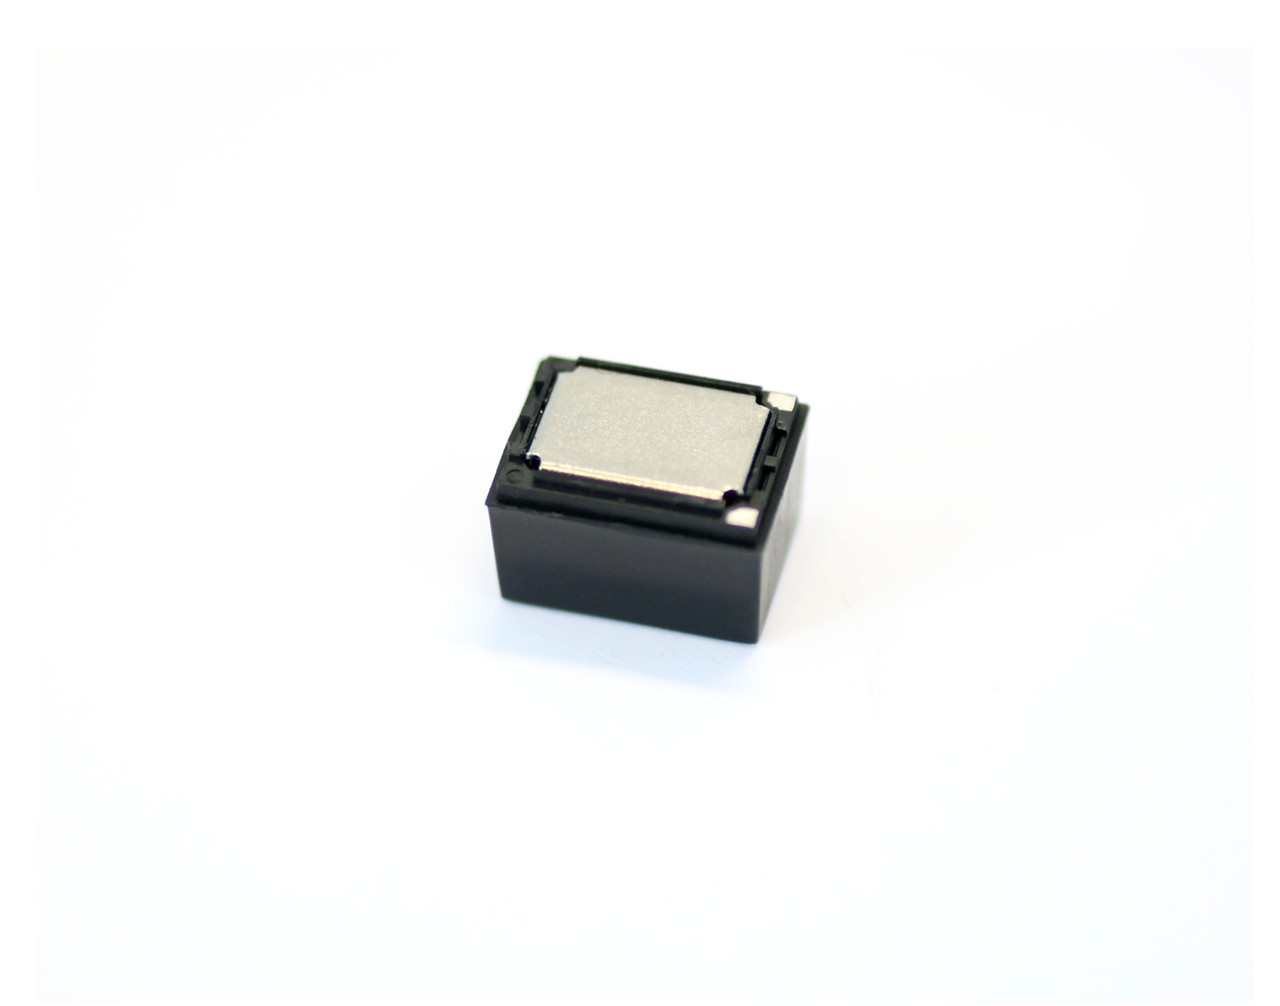 SoundTraxx 810154 - Mini Cube Speaker - 16 x 12 x 11.3 mm